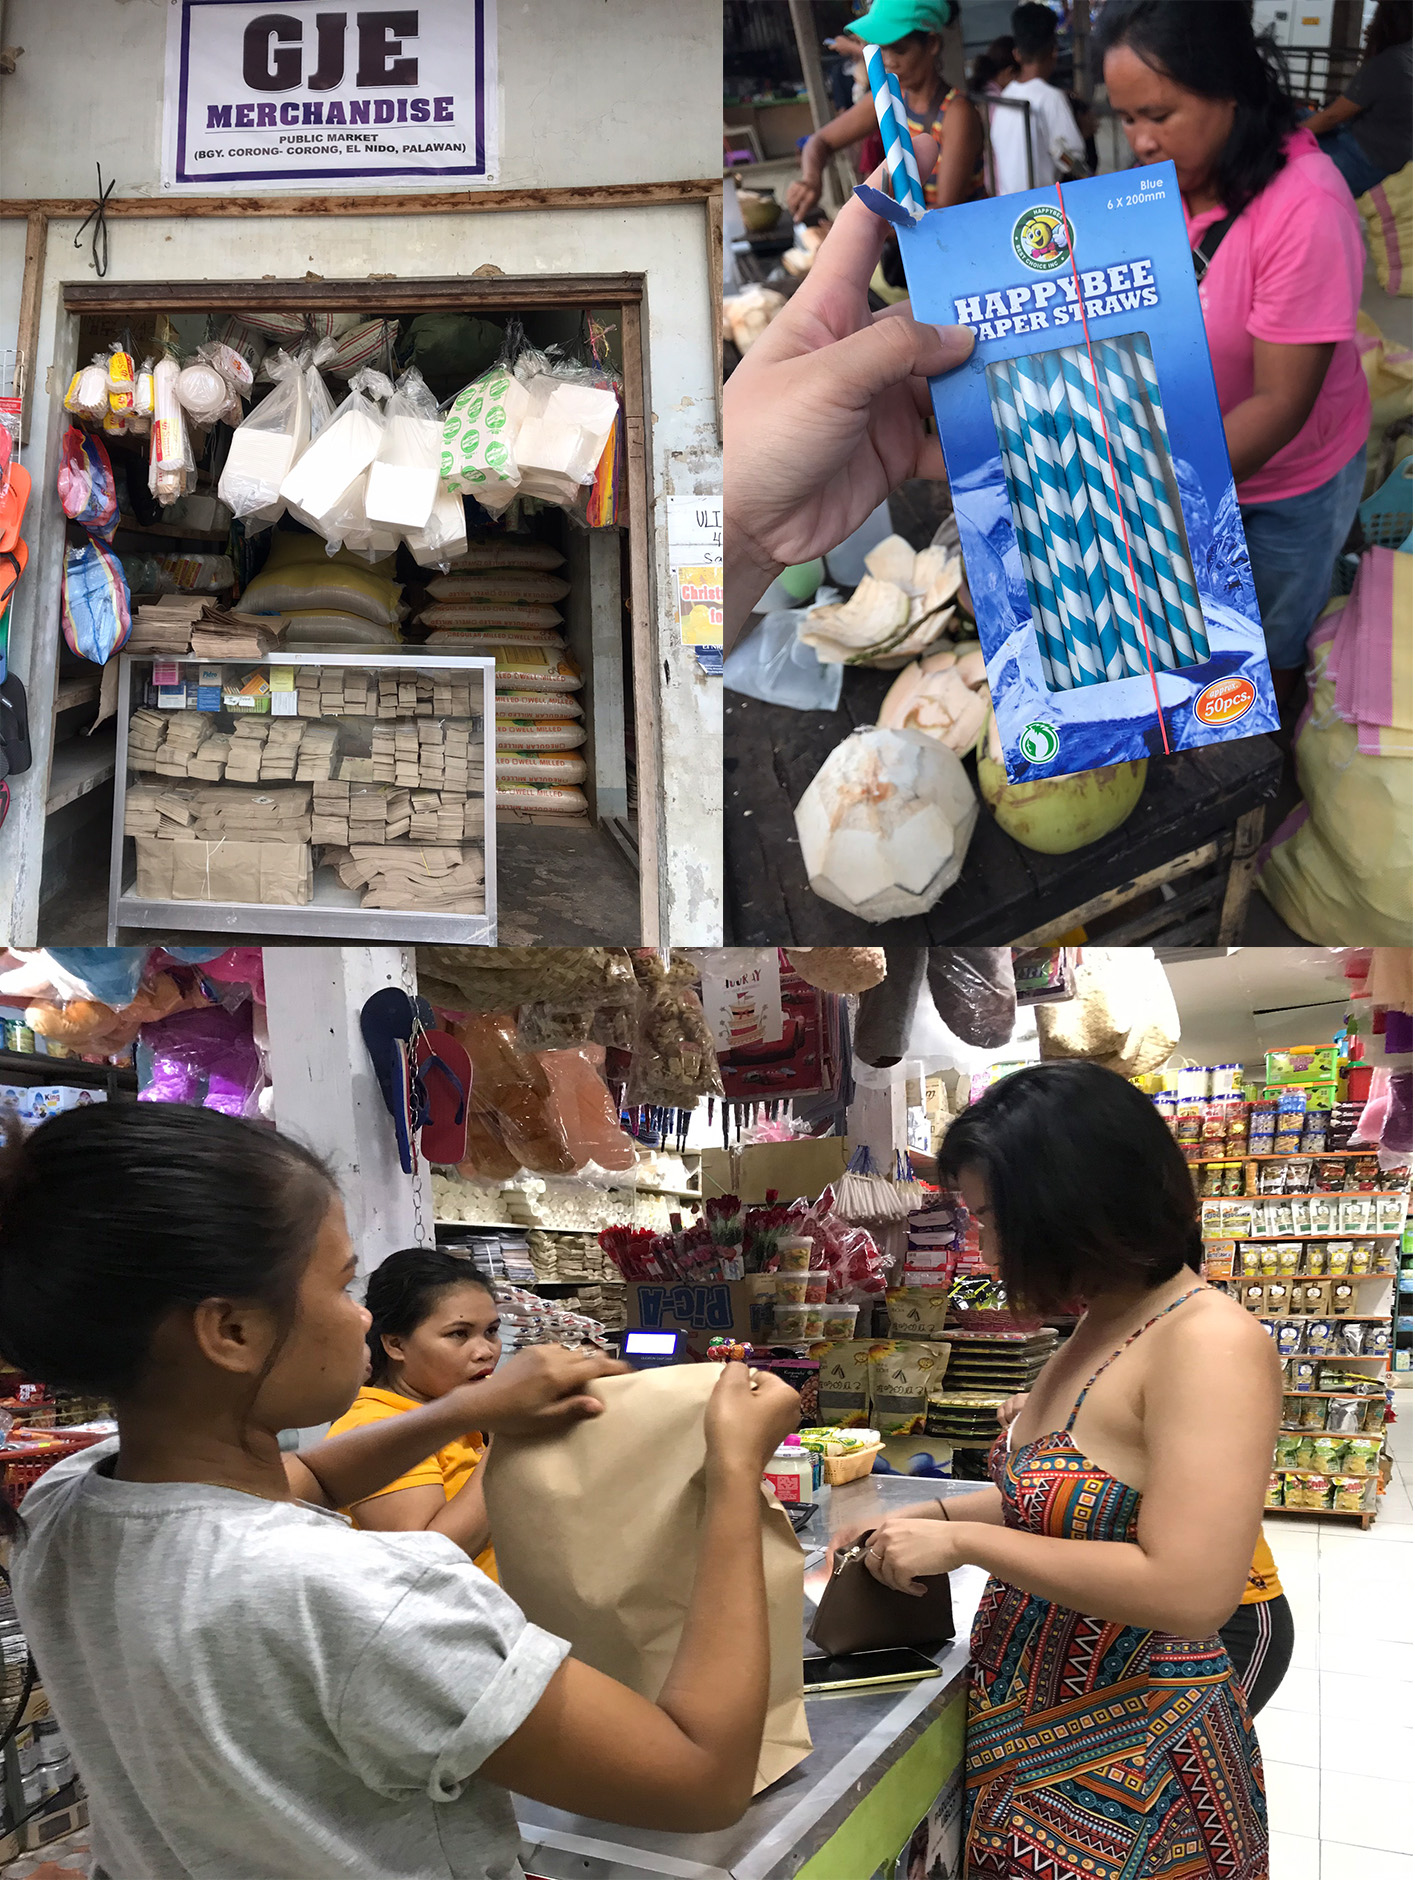 Tui giấy, túi nilong sinh học, ống hút giấy được bày bán rộng rãi, giúp người dân ở tỉnh Palawan, Philippines dễ dàng sử dụng. 